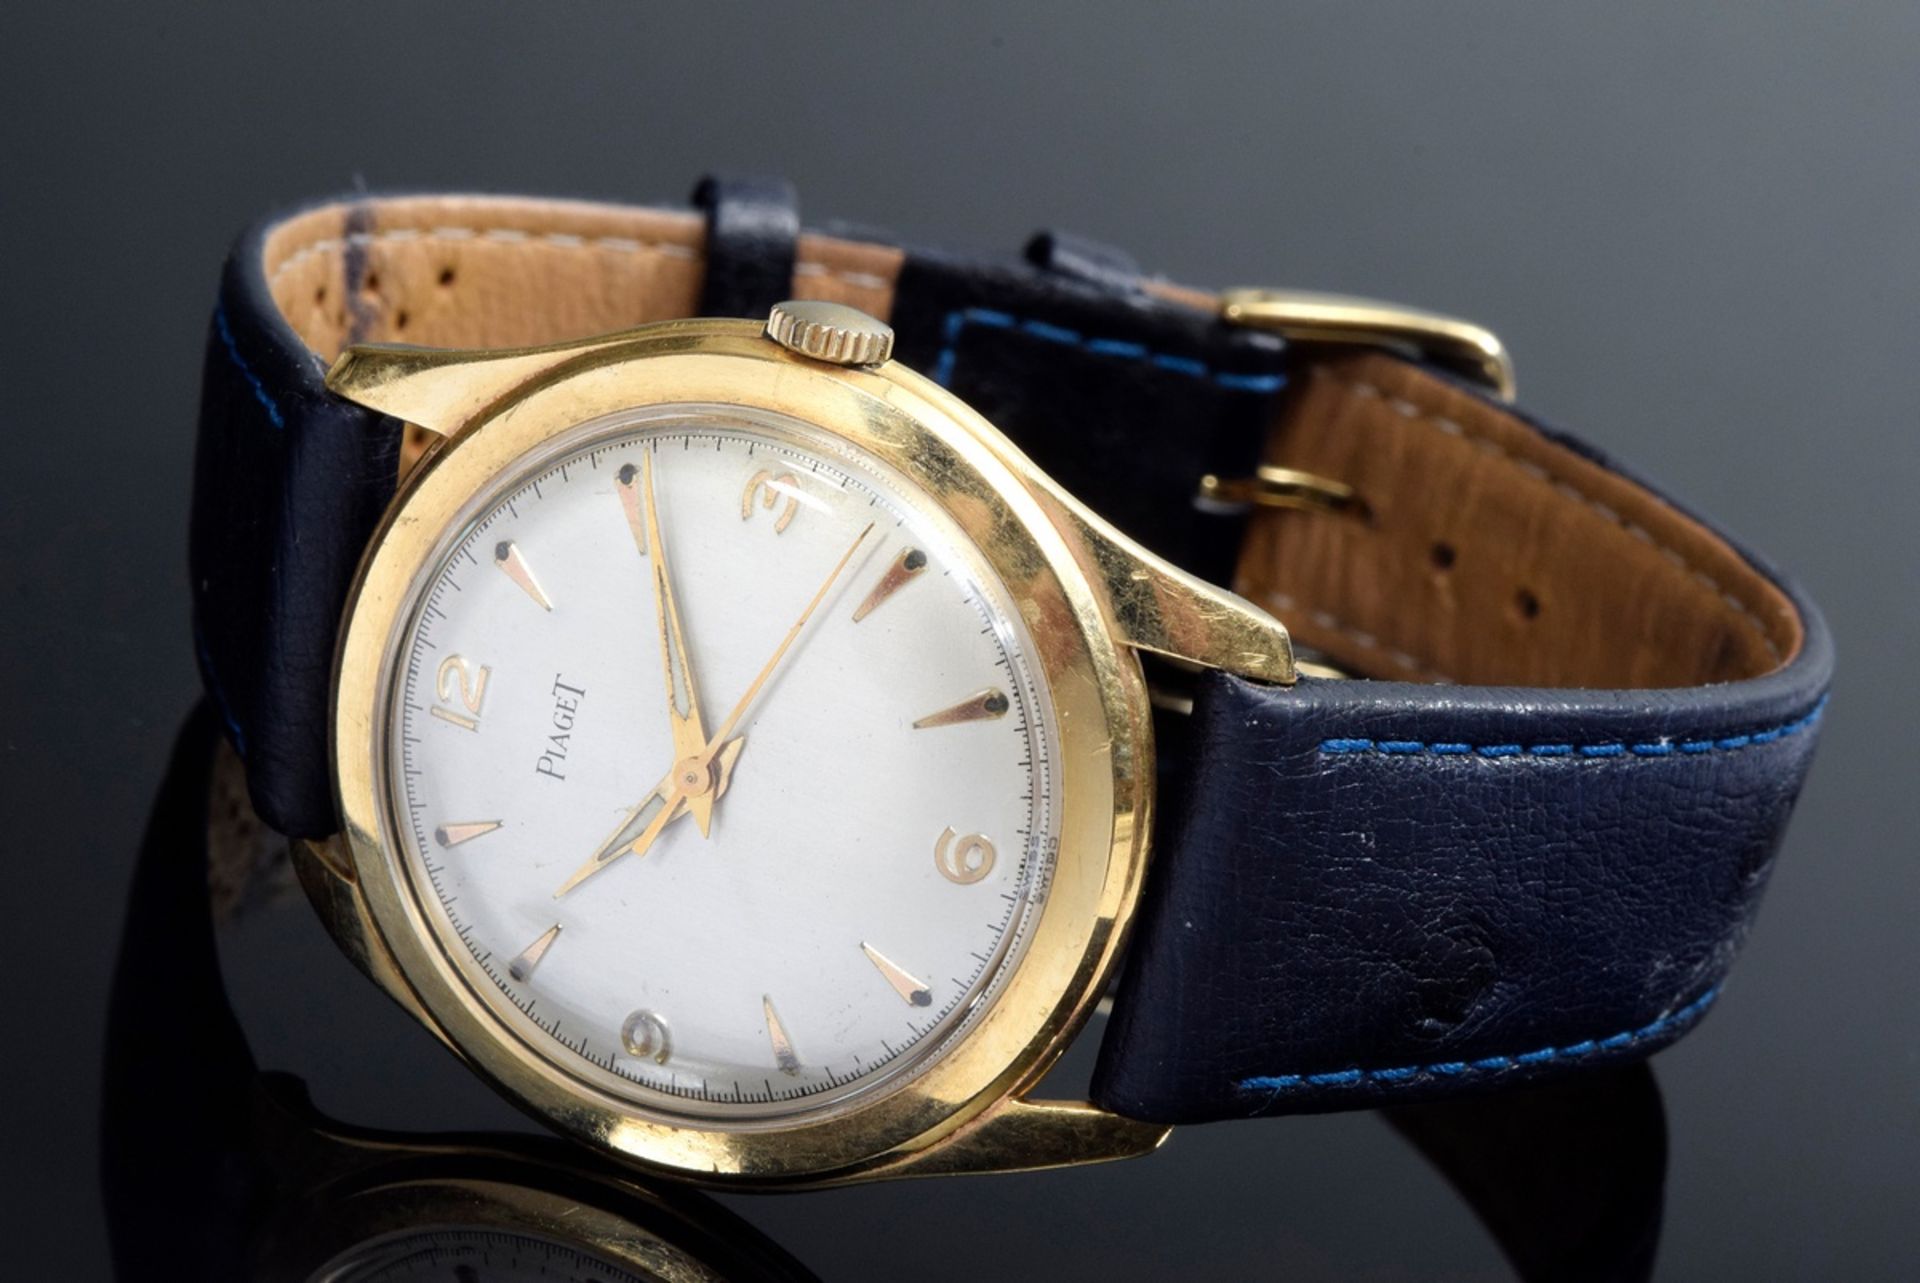 GG 750 Piaget Armbanduhr mit dunkelblauem Strauß | GG 750 Piaget wristwatch with dark blue ostrich